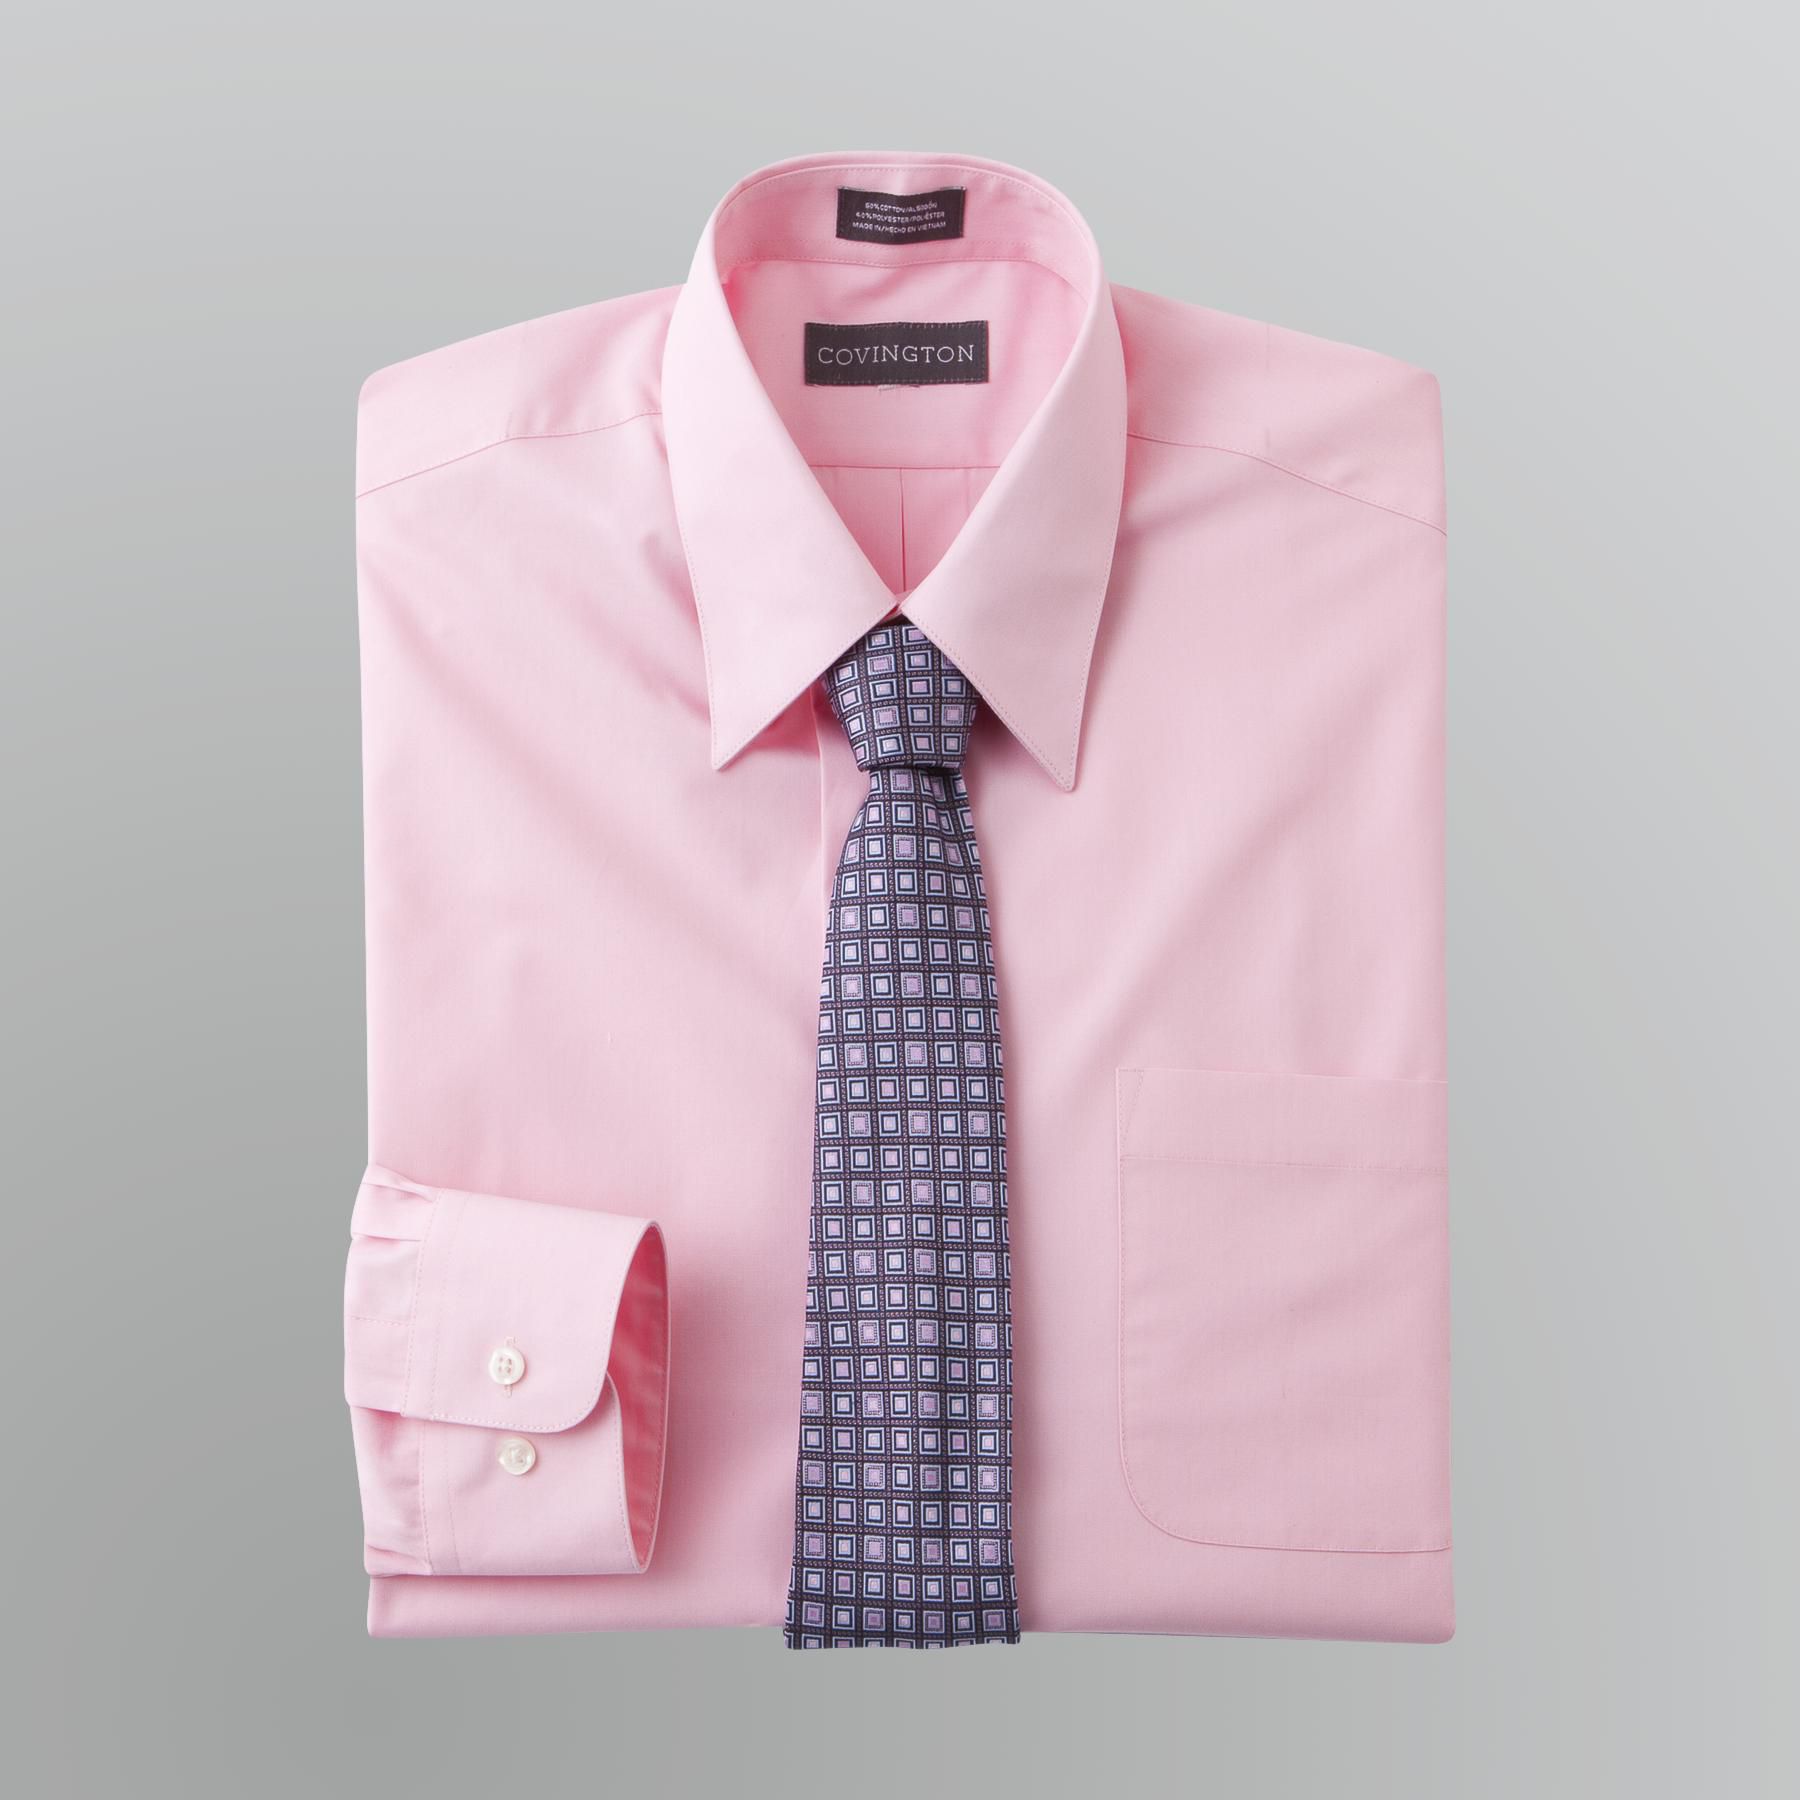 Covington Men's Dress Shirt and Tie Set